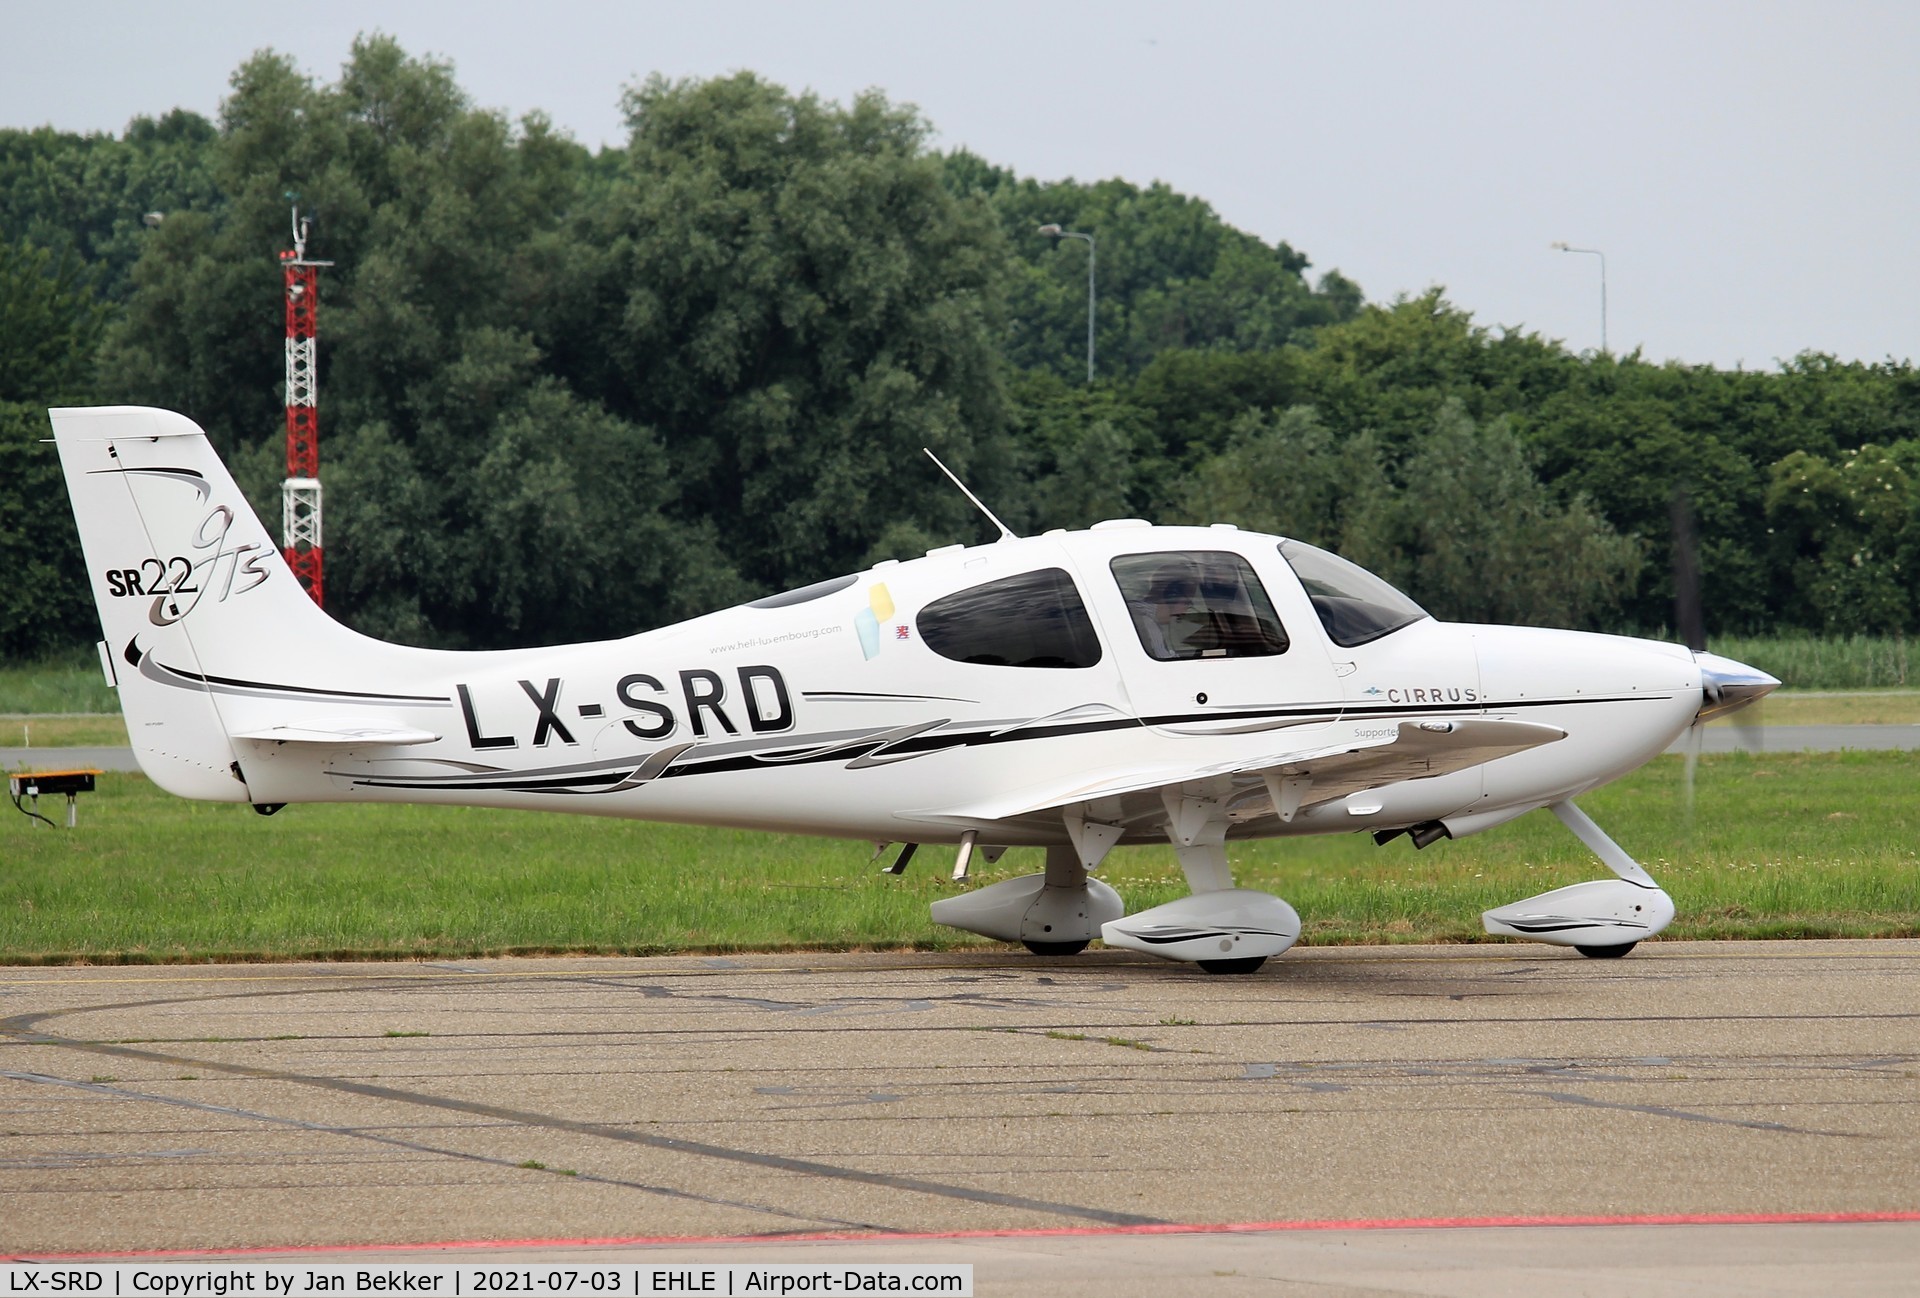 LX-SRD, 2006 Cirrus SR22 GTS C/N 1759, Lelystad Airport